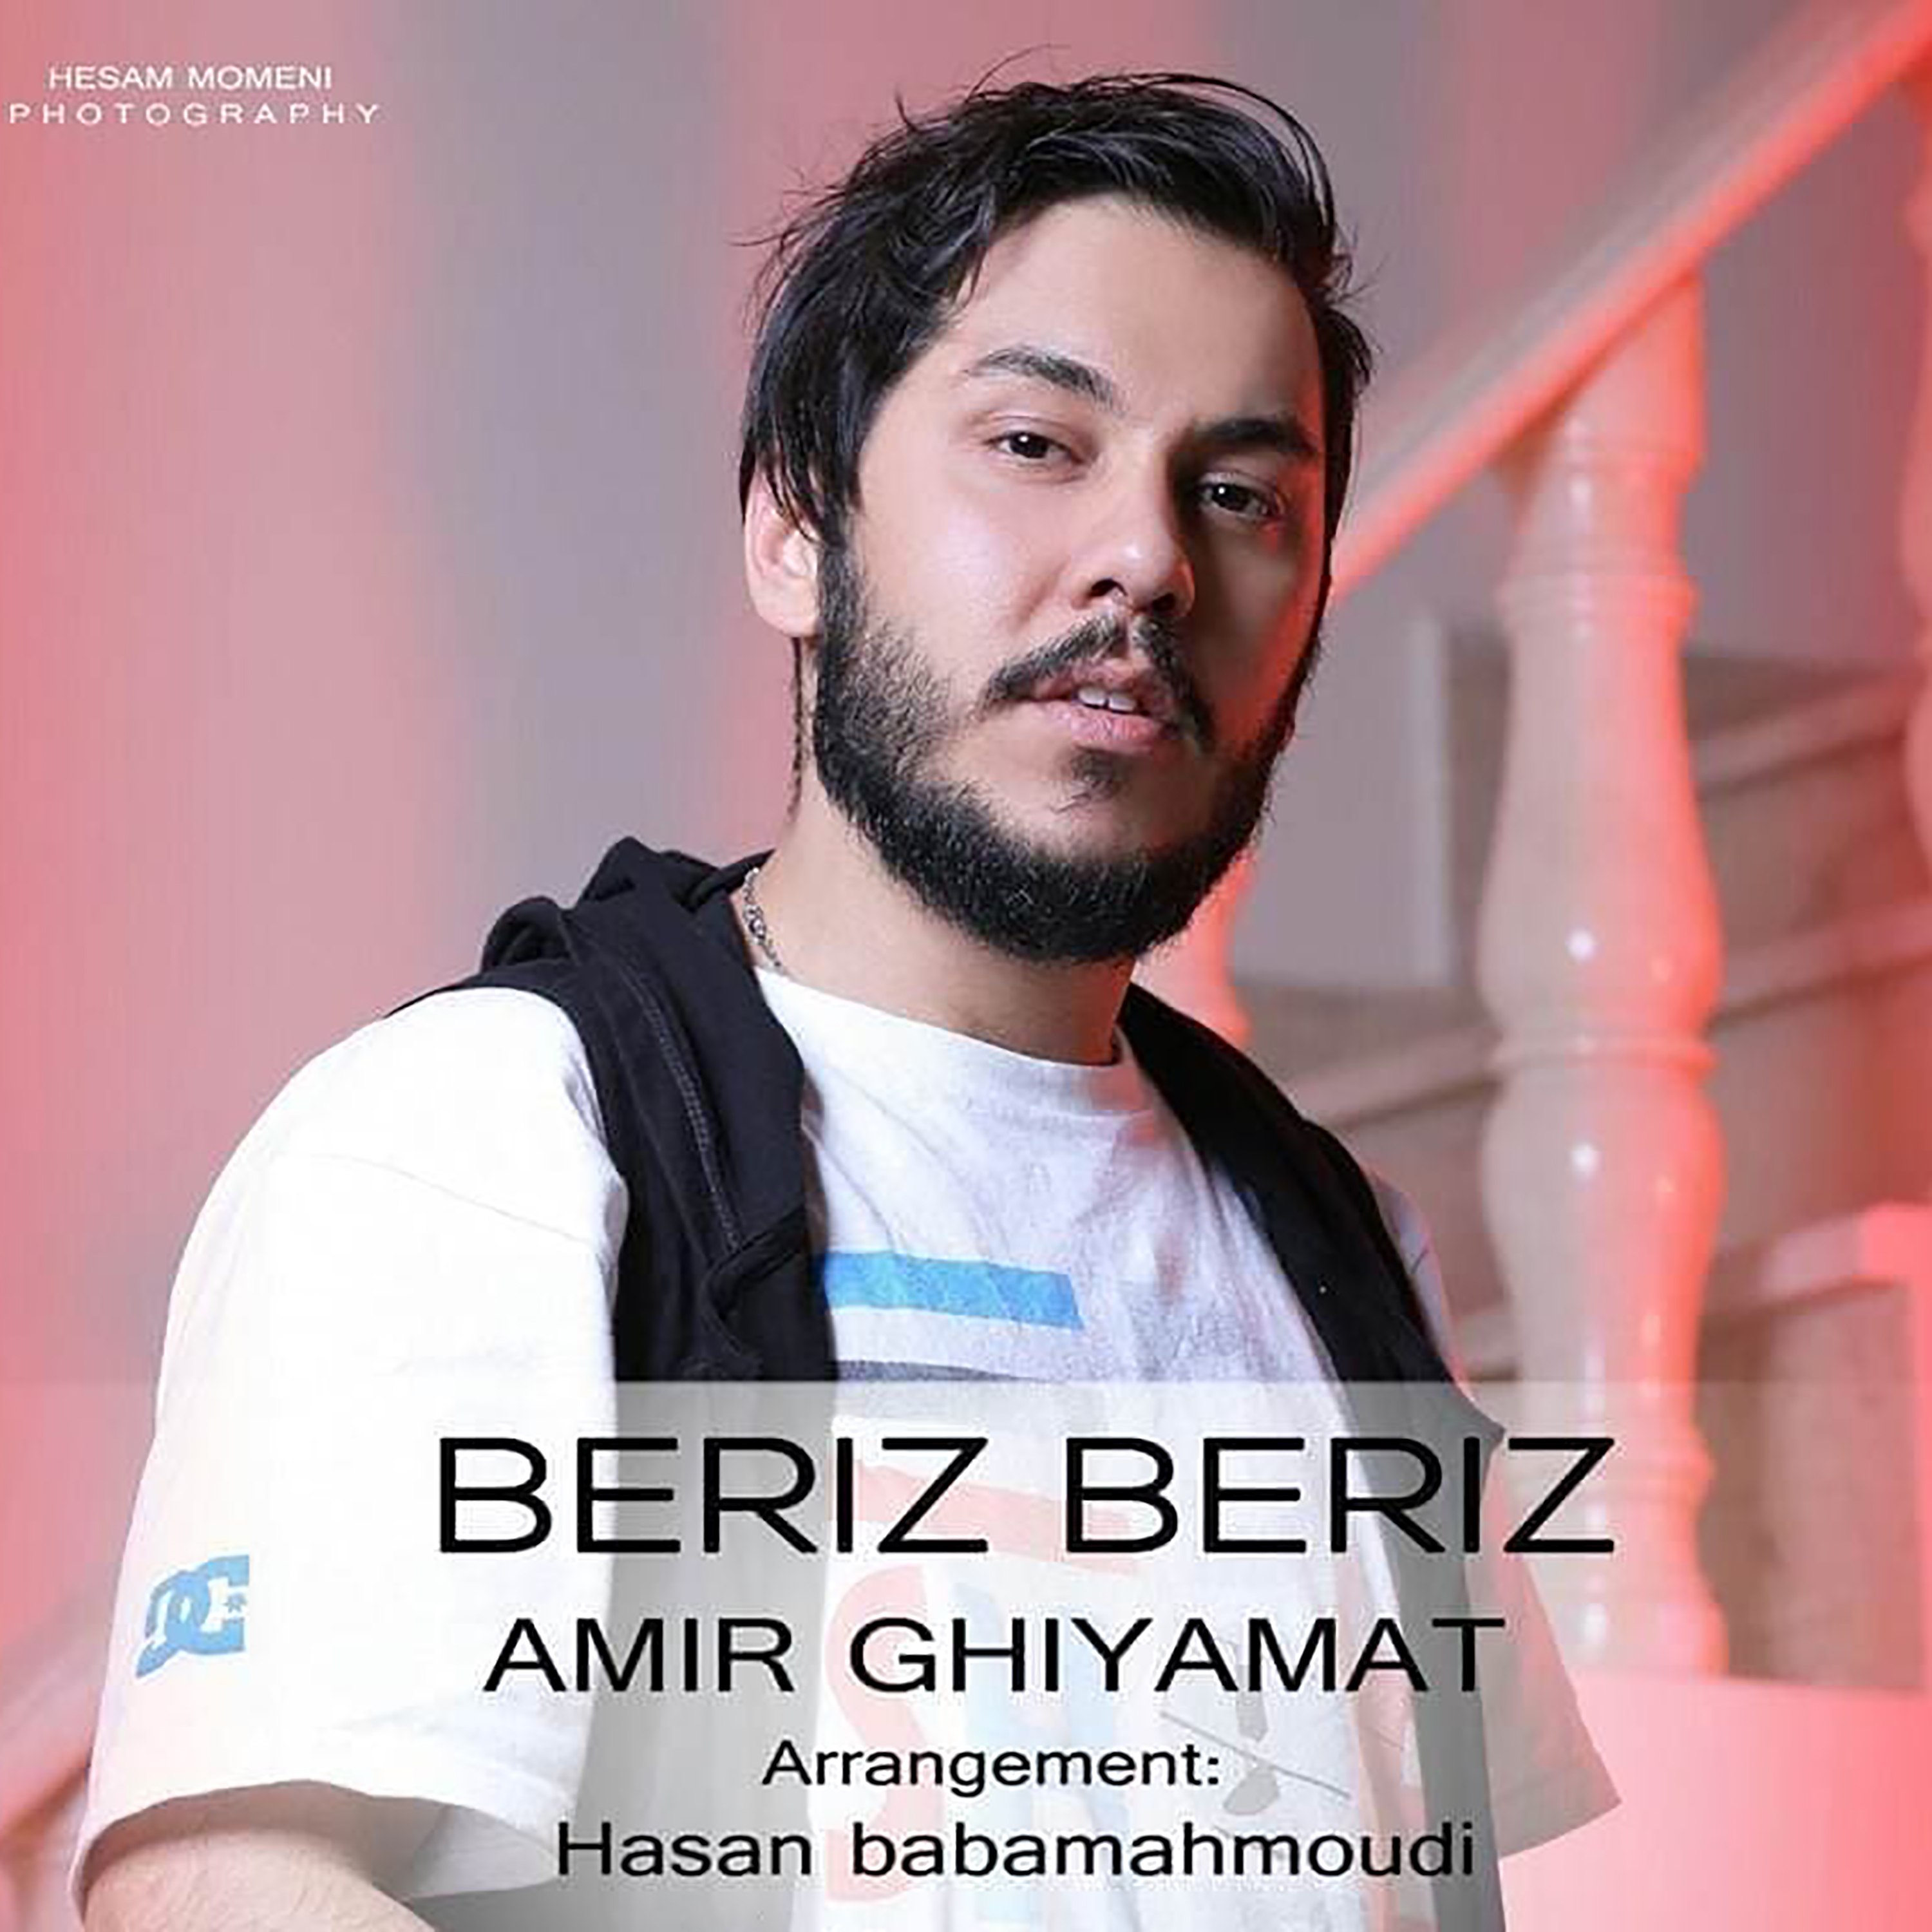  دانلود آهنگ جدید امیر قیامت - بریز بریز | Download New Music By Amir Ghiyamat - Beriz Beriz